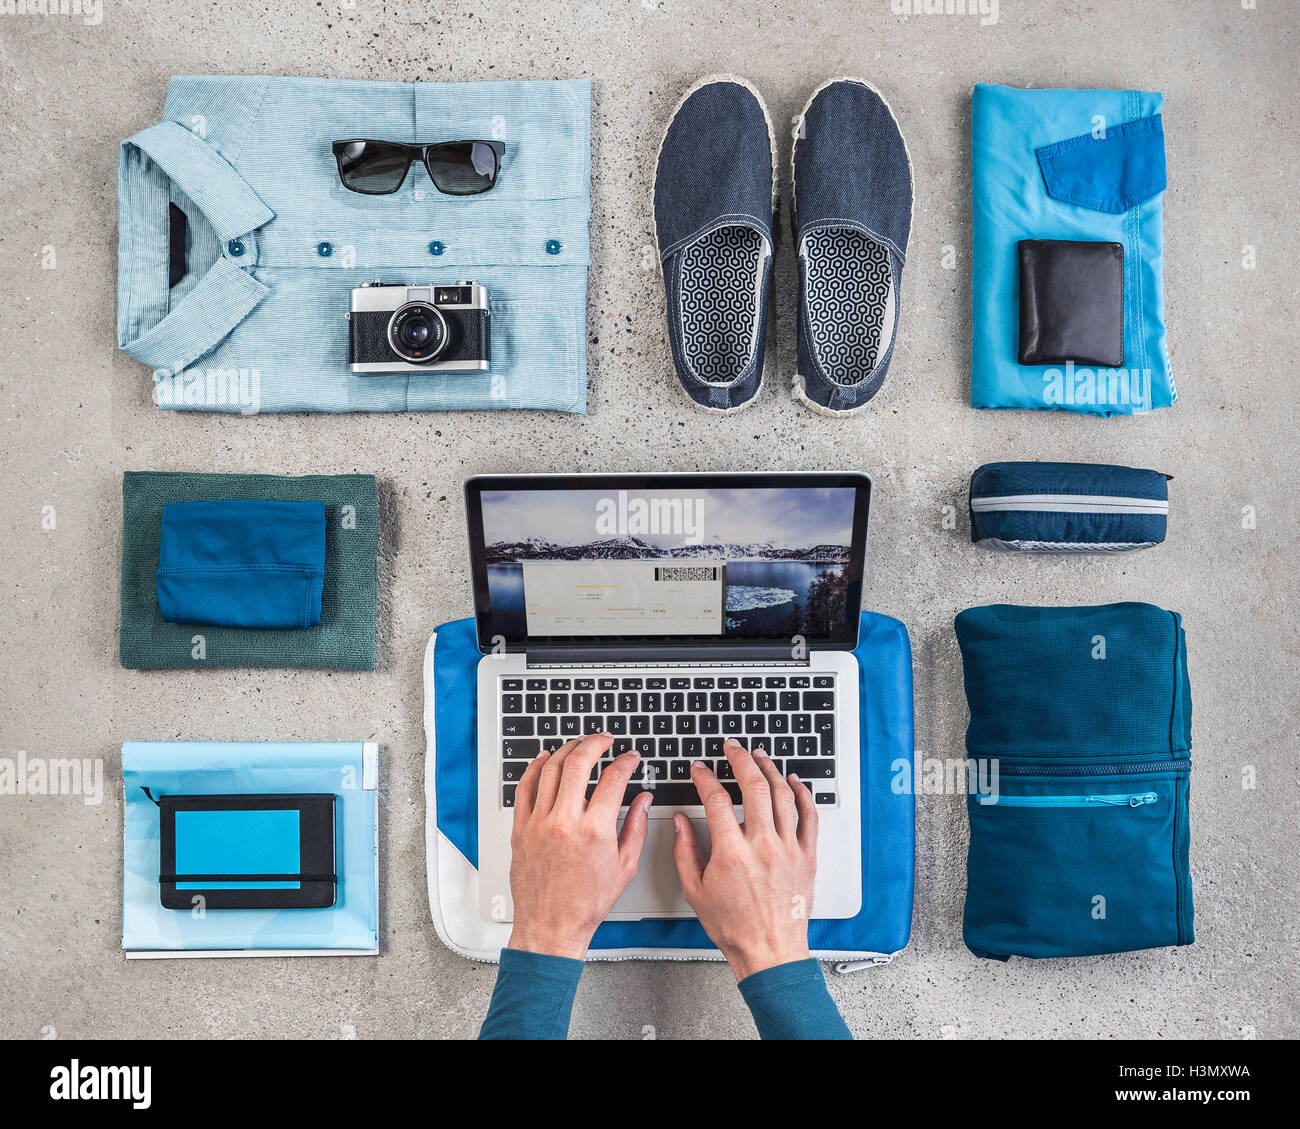 Vue de dessus de man's hands typing on laptop entouré par les éléments d'emballage, avec chemise bleu rétro, appareil photo, ordinateur portable et sac de lavage Banque D'Images